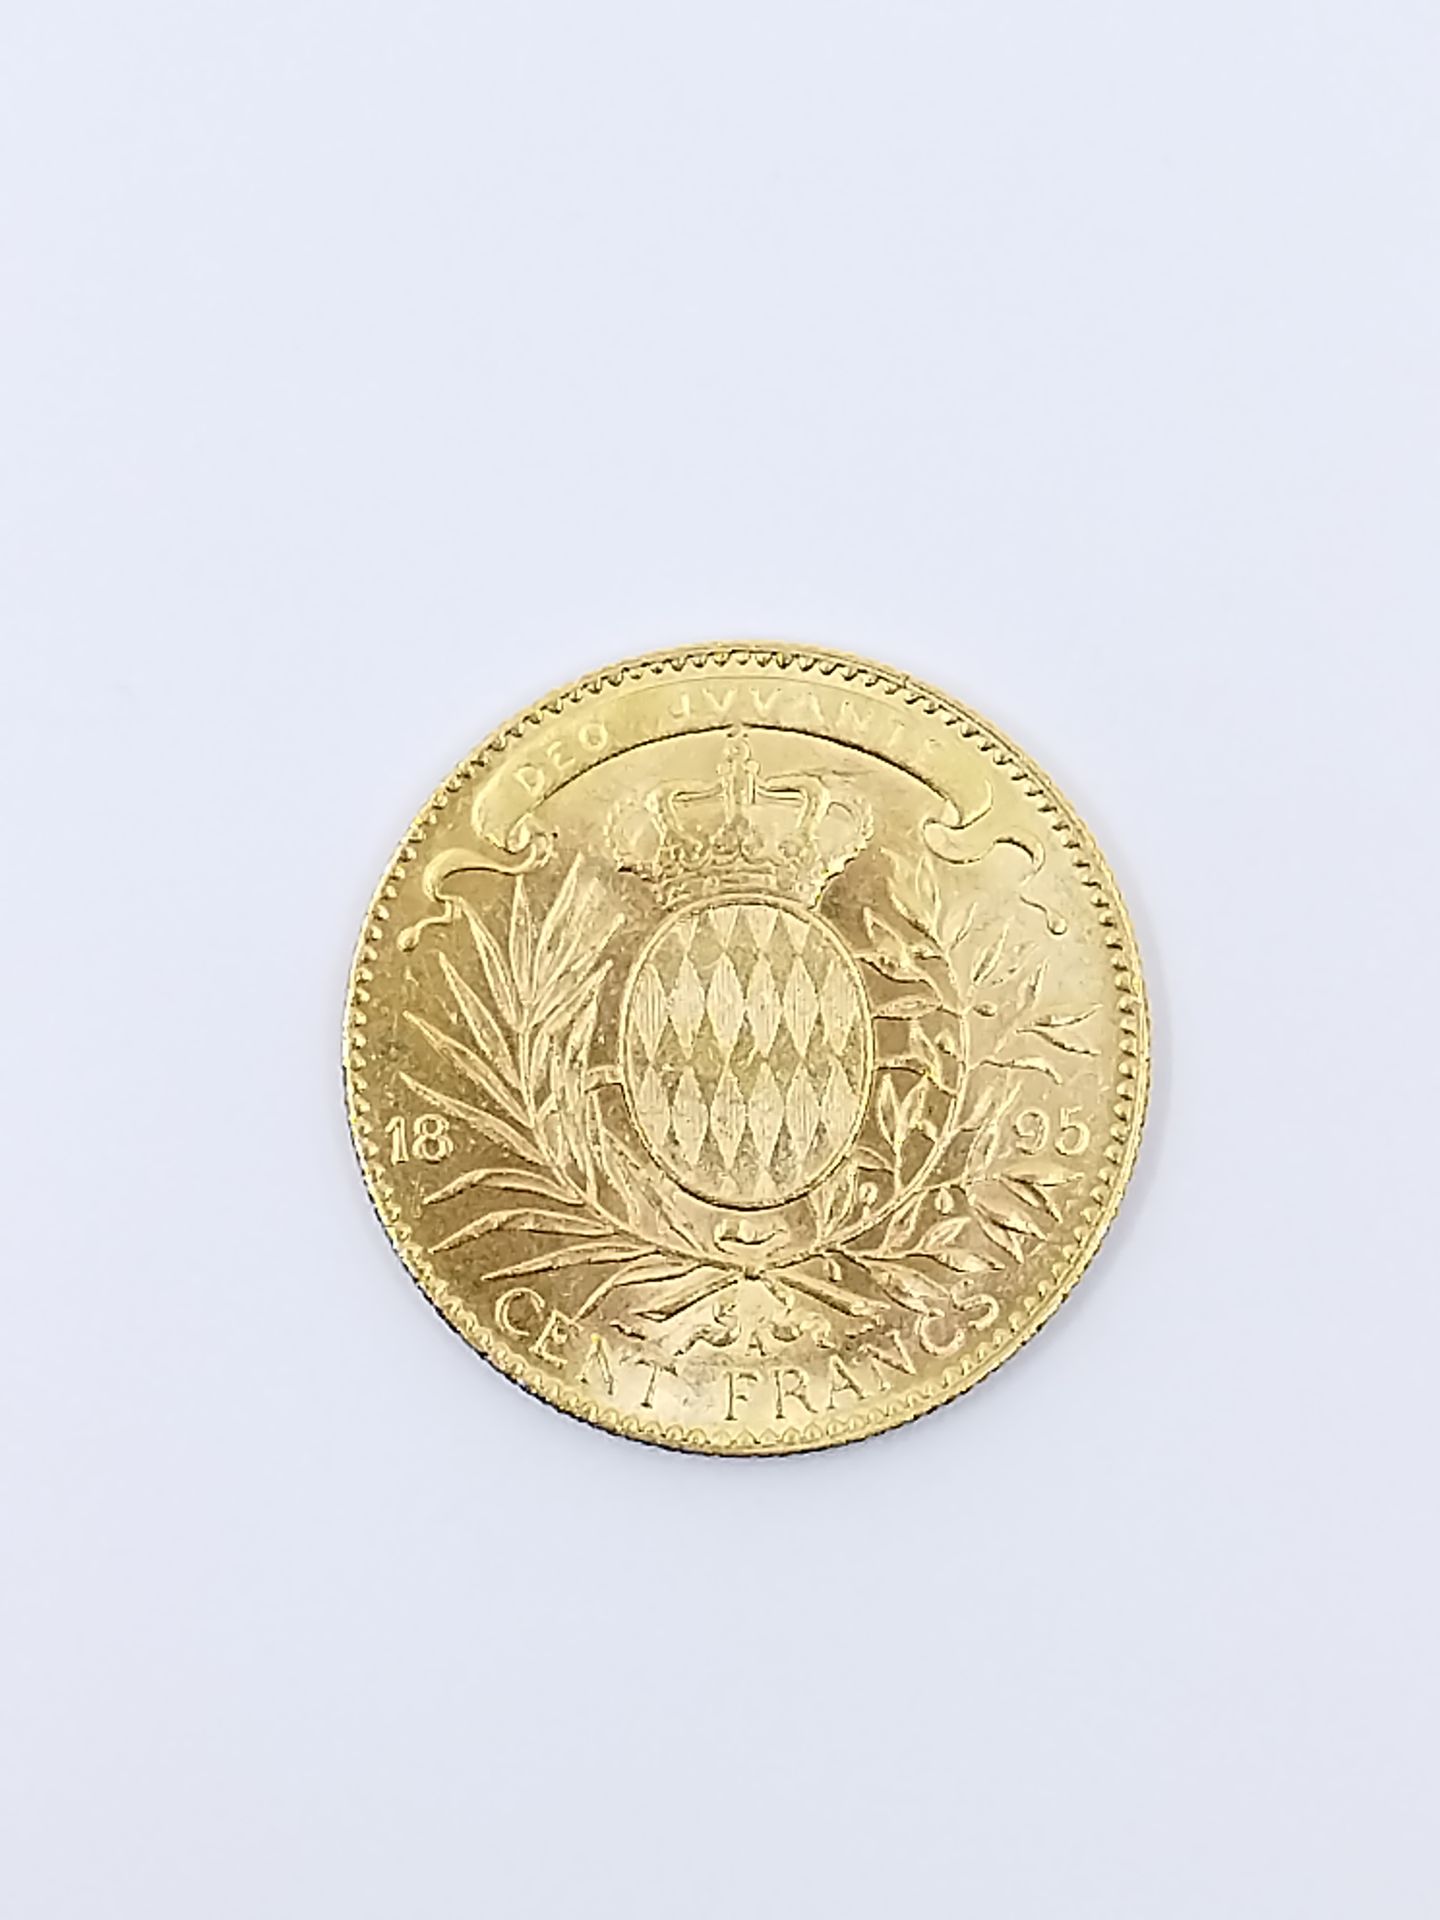 Null 摩纳哥亲王阿尔伯特一世金币100法郎的碎片，1895年

重量 : 32,3 g